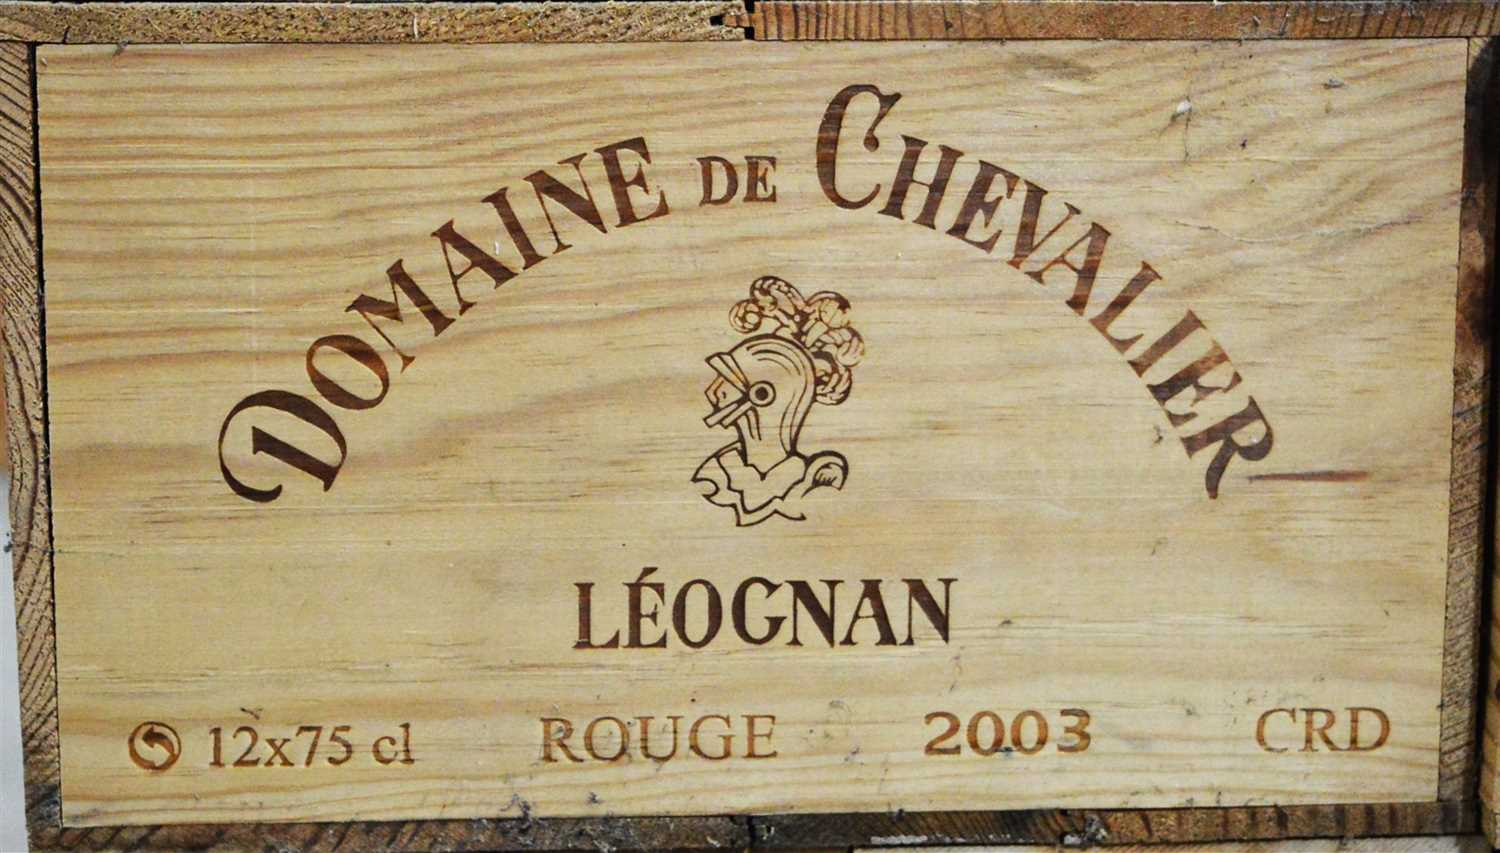 Lot 398 - Twelve bottles of Domaine de Chevalier.